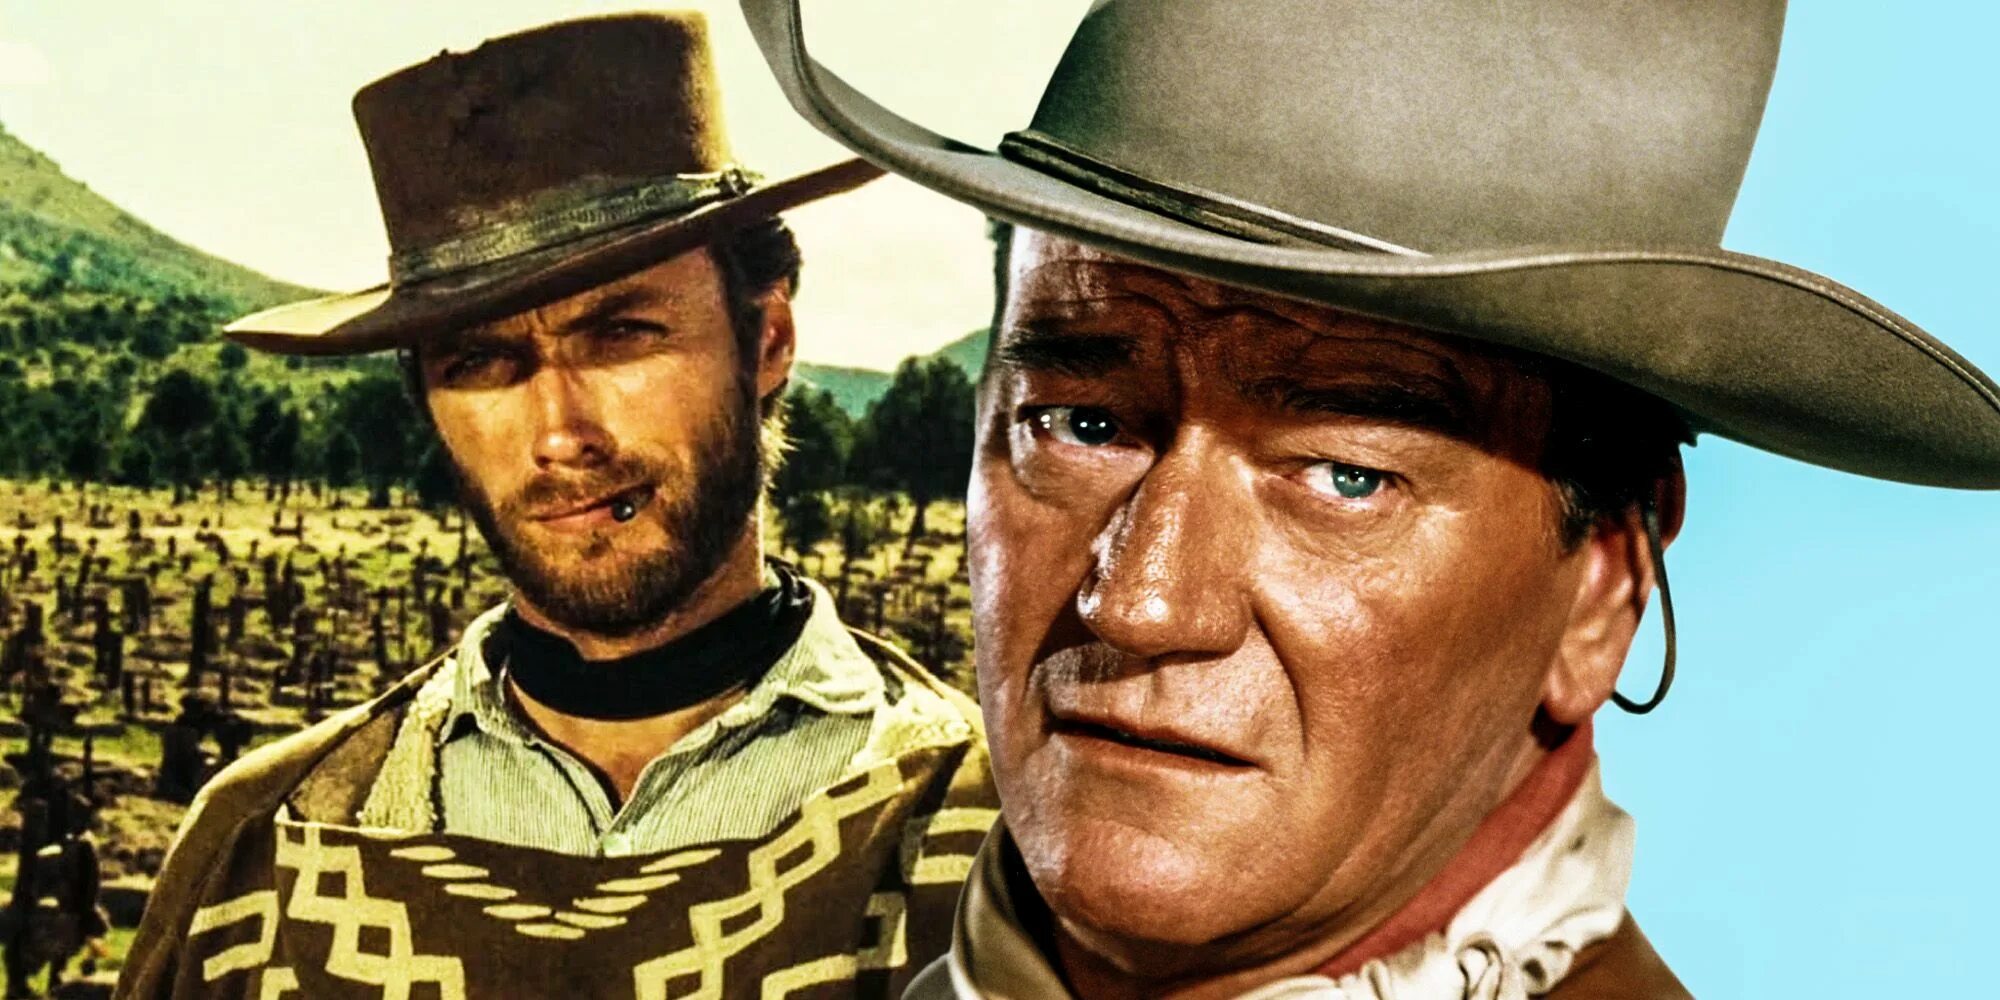 Смотрим вестерны 50 60 годов. Клинт Иствуд 1965. John Wayne. Джон Уэйн и Клинт Иствуд. Клинт Иствуд дикий Запад.